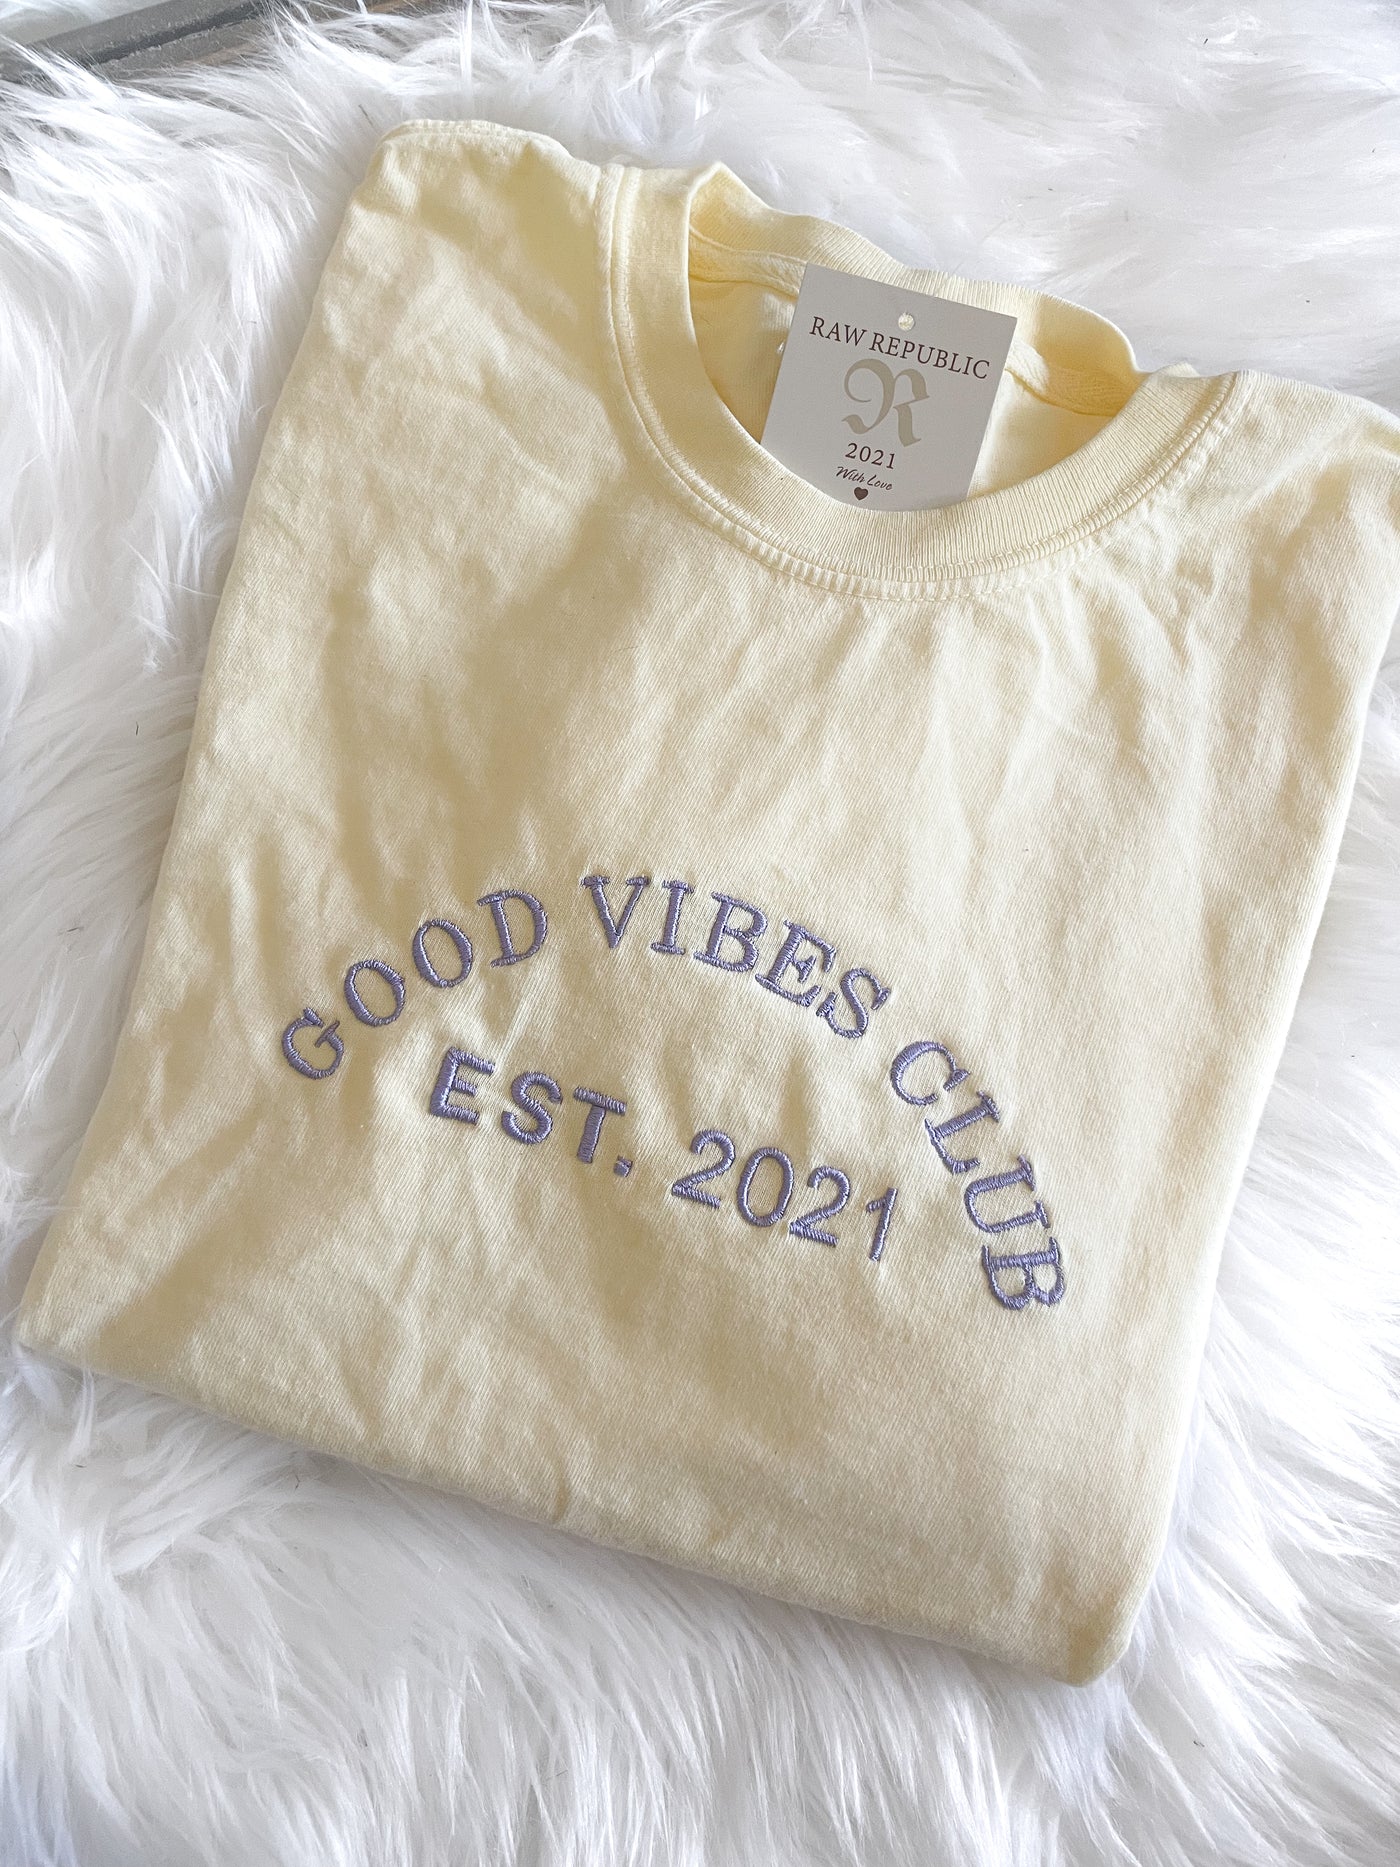 Good Vibes Club T-Shirt